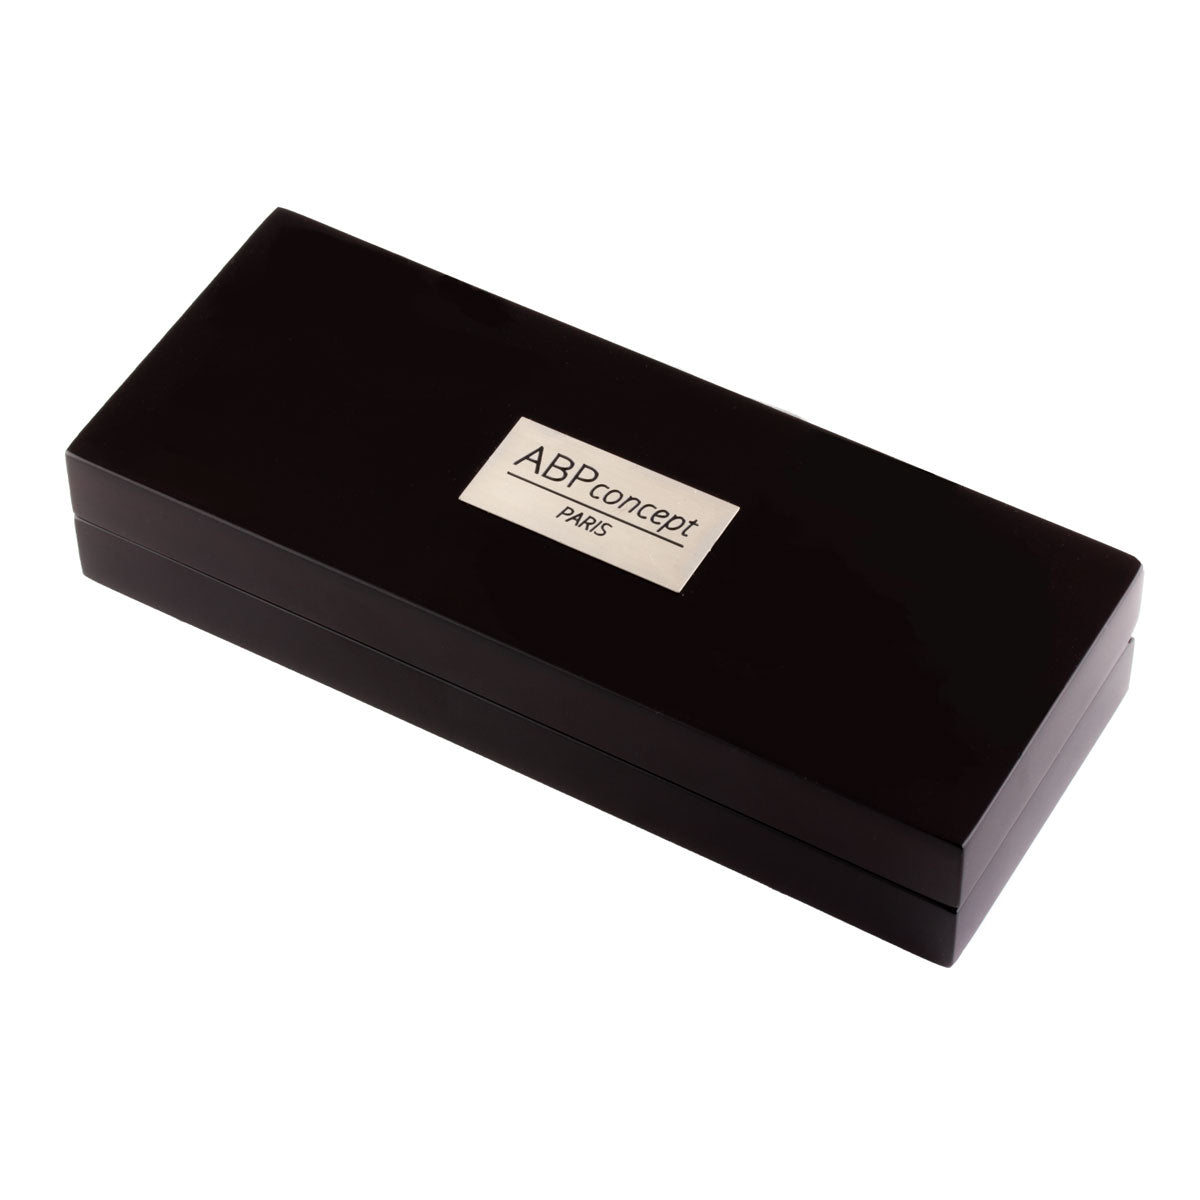 LUCRIN Geneva Luxury Pen Case - Black - Crocodile Style Calfskin